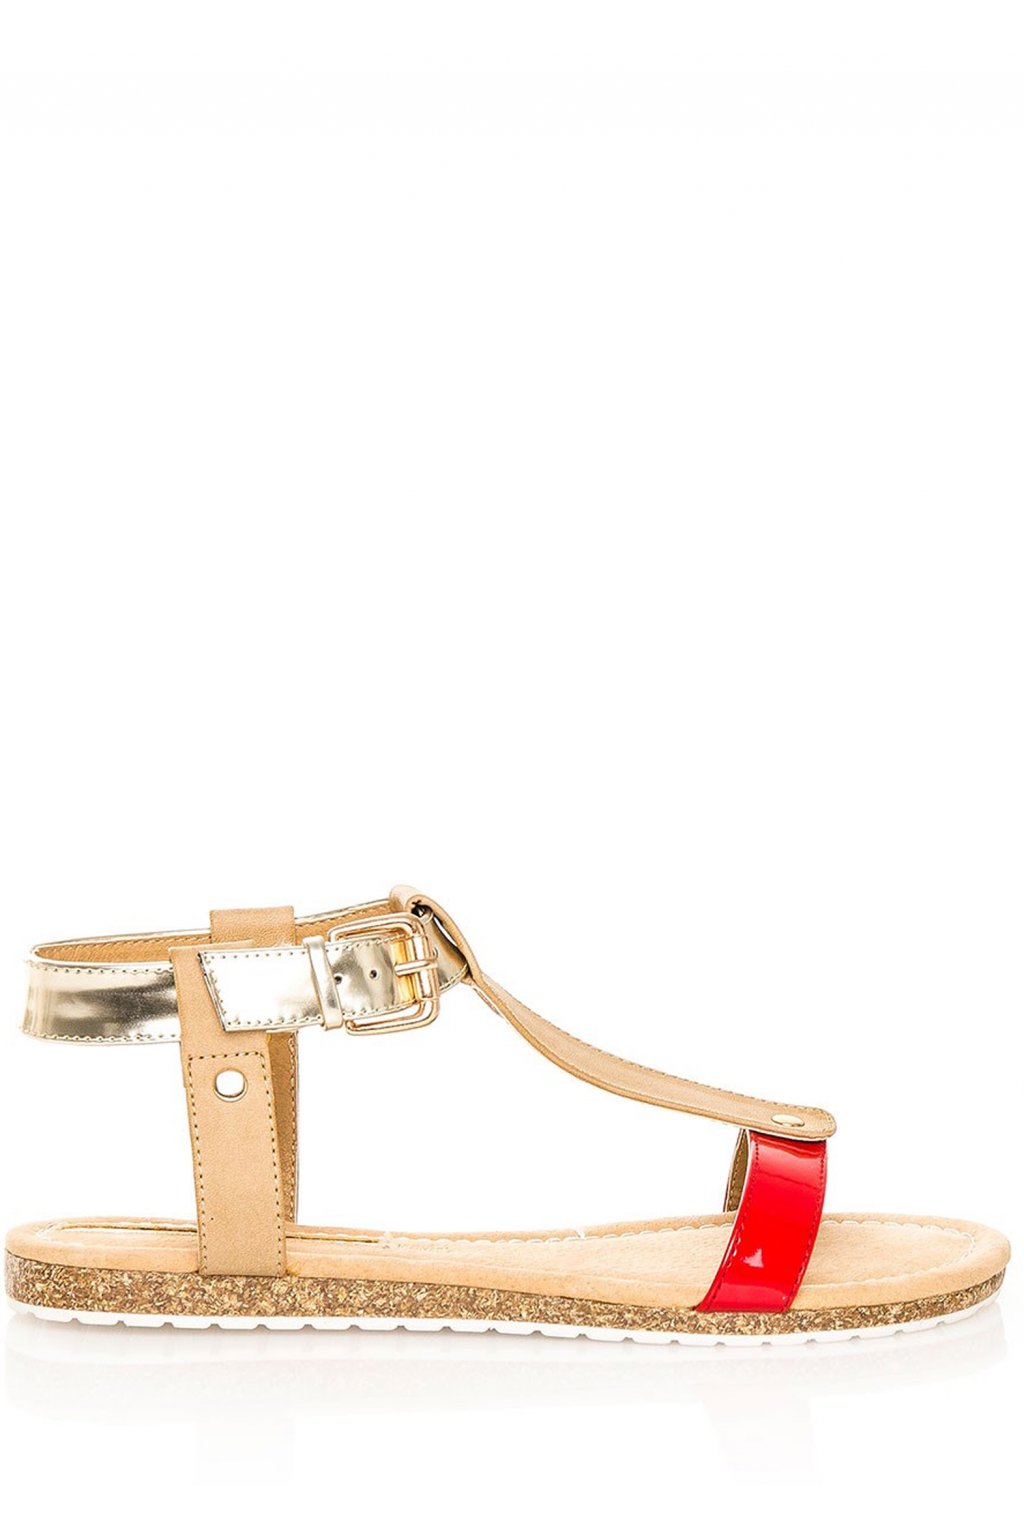 Červeno-zlaté korkové letní sandálky MARIA MARE